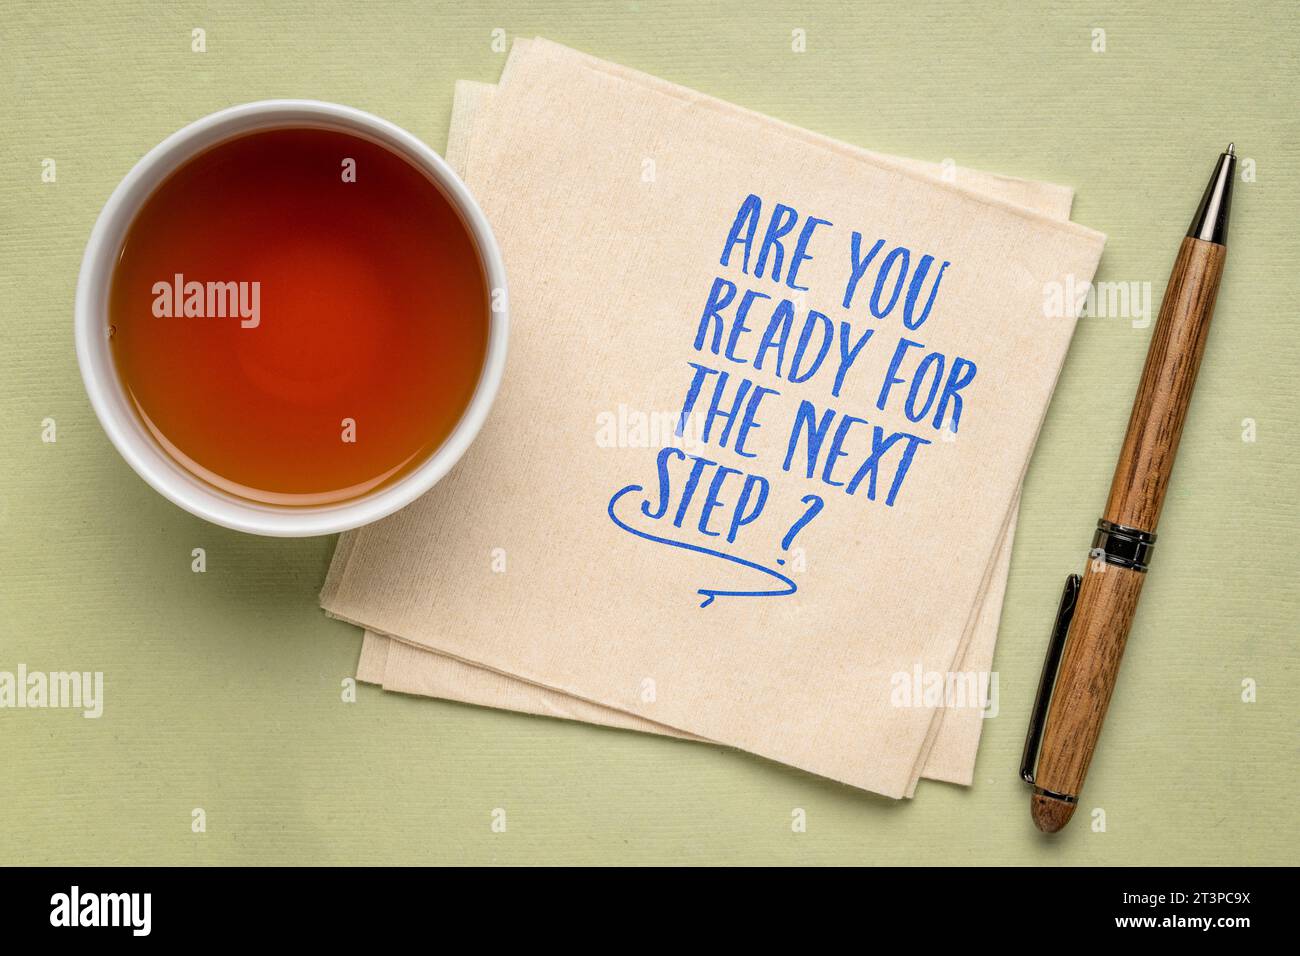 Sind Sie bereit für den nächsten Schritt? Selbstbesinnungsfrage auf einer Serviette mit Tee. Persönliche Entwicklung oder Karrierekonzept. Stockfoto